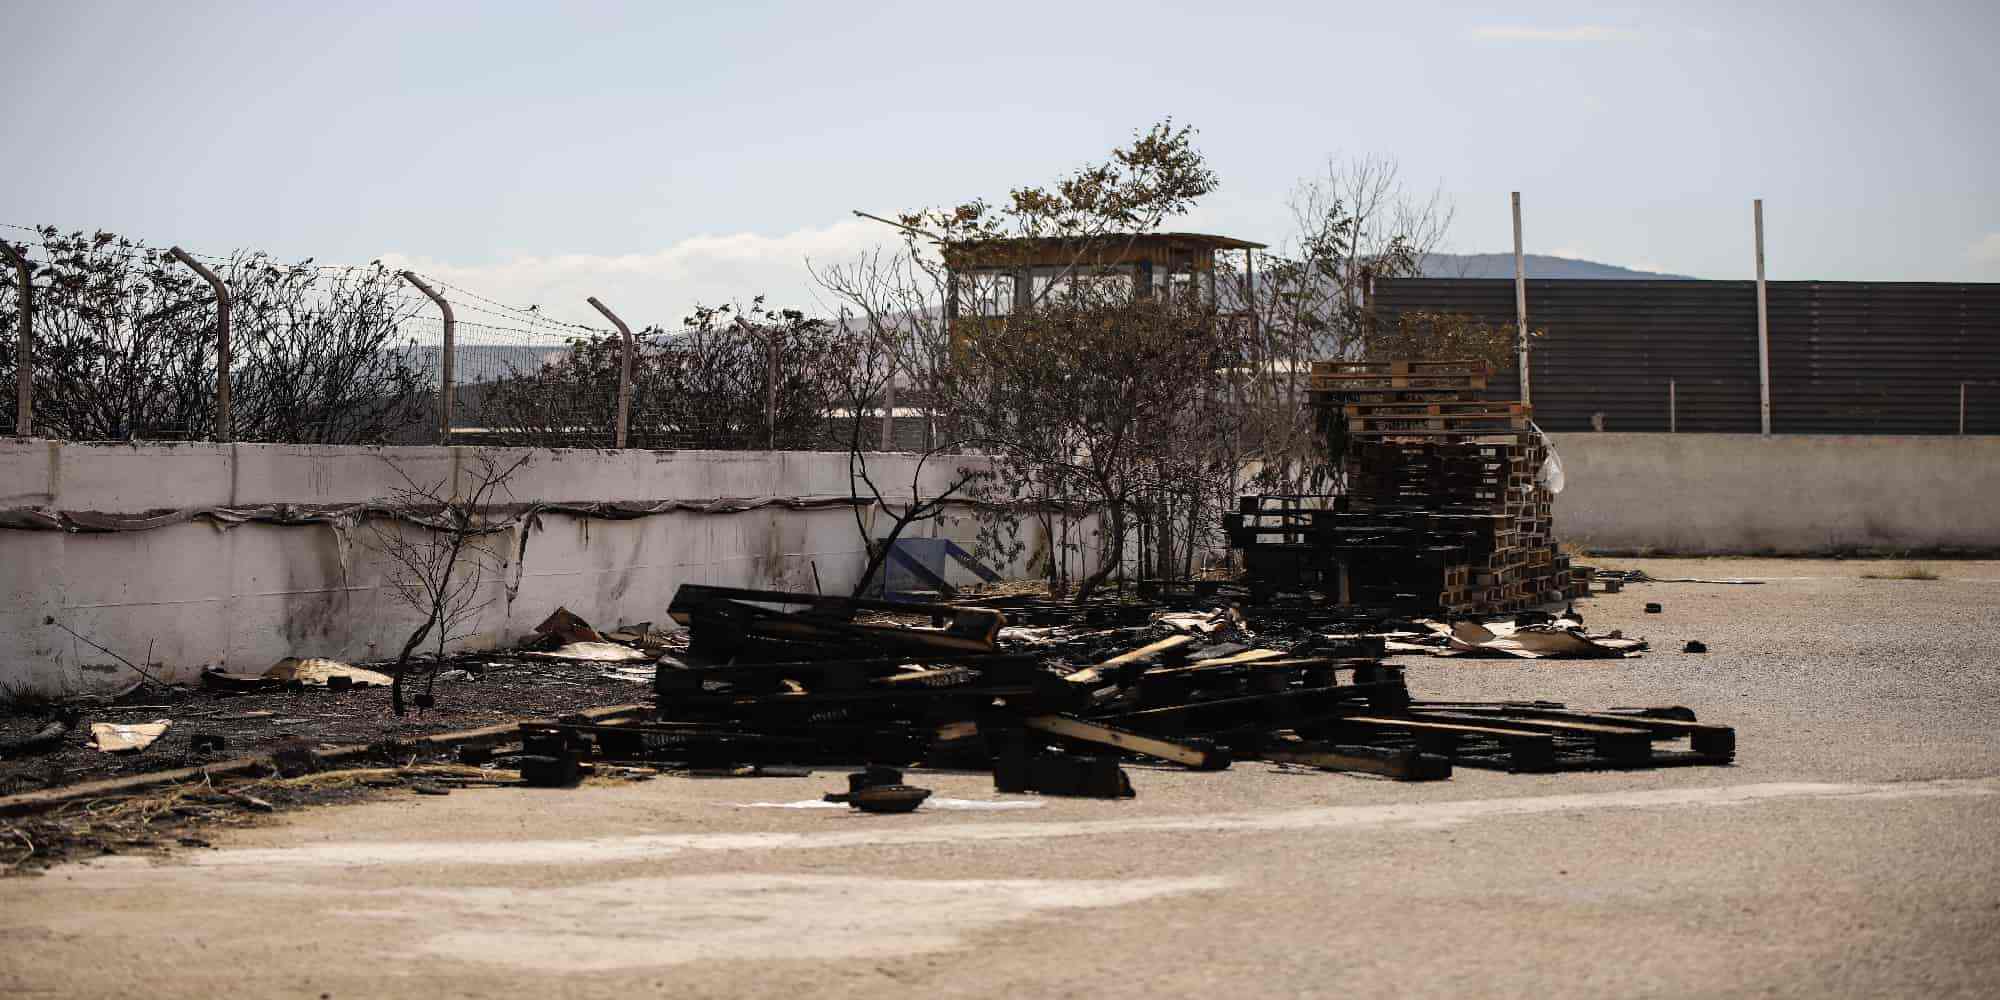 Καταστροφές από την πυρκαγιά που ξέσπασε σε προαύλιο εργοστασίου κατασκευής πλαστικών στον Ασπρόπυργο, επί της οδού Αγίας Σοφίας